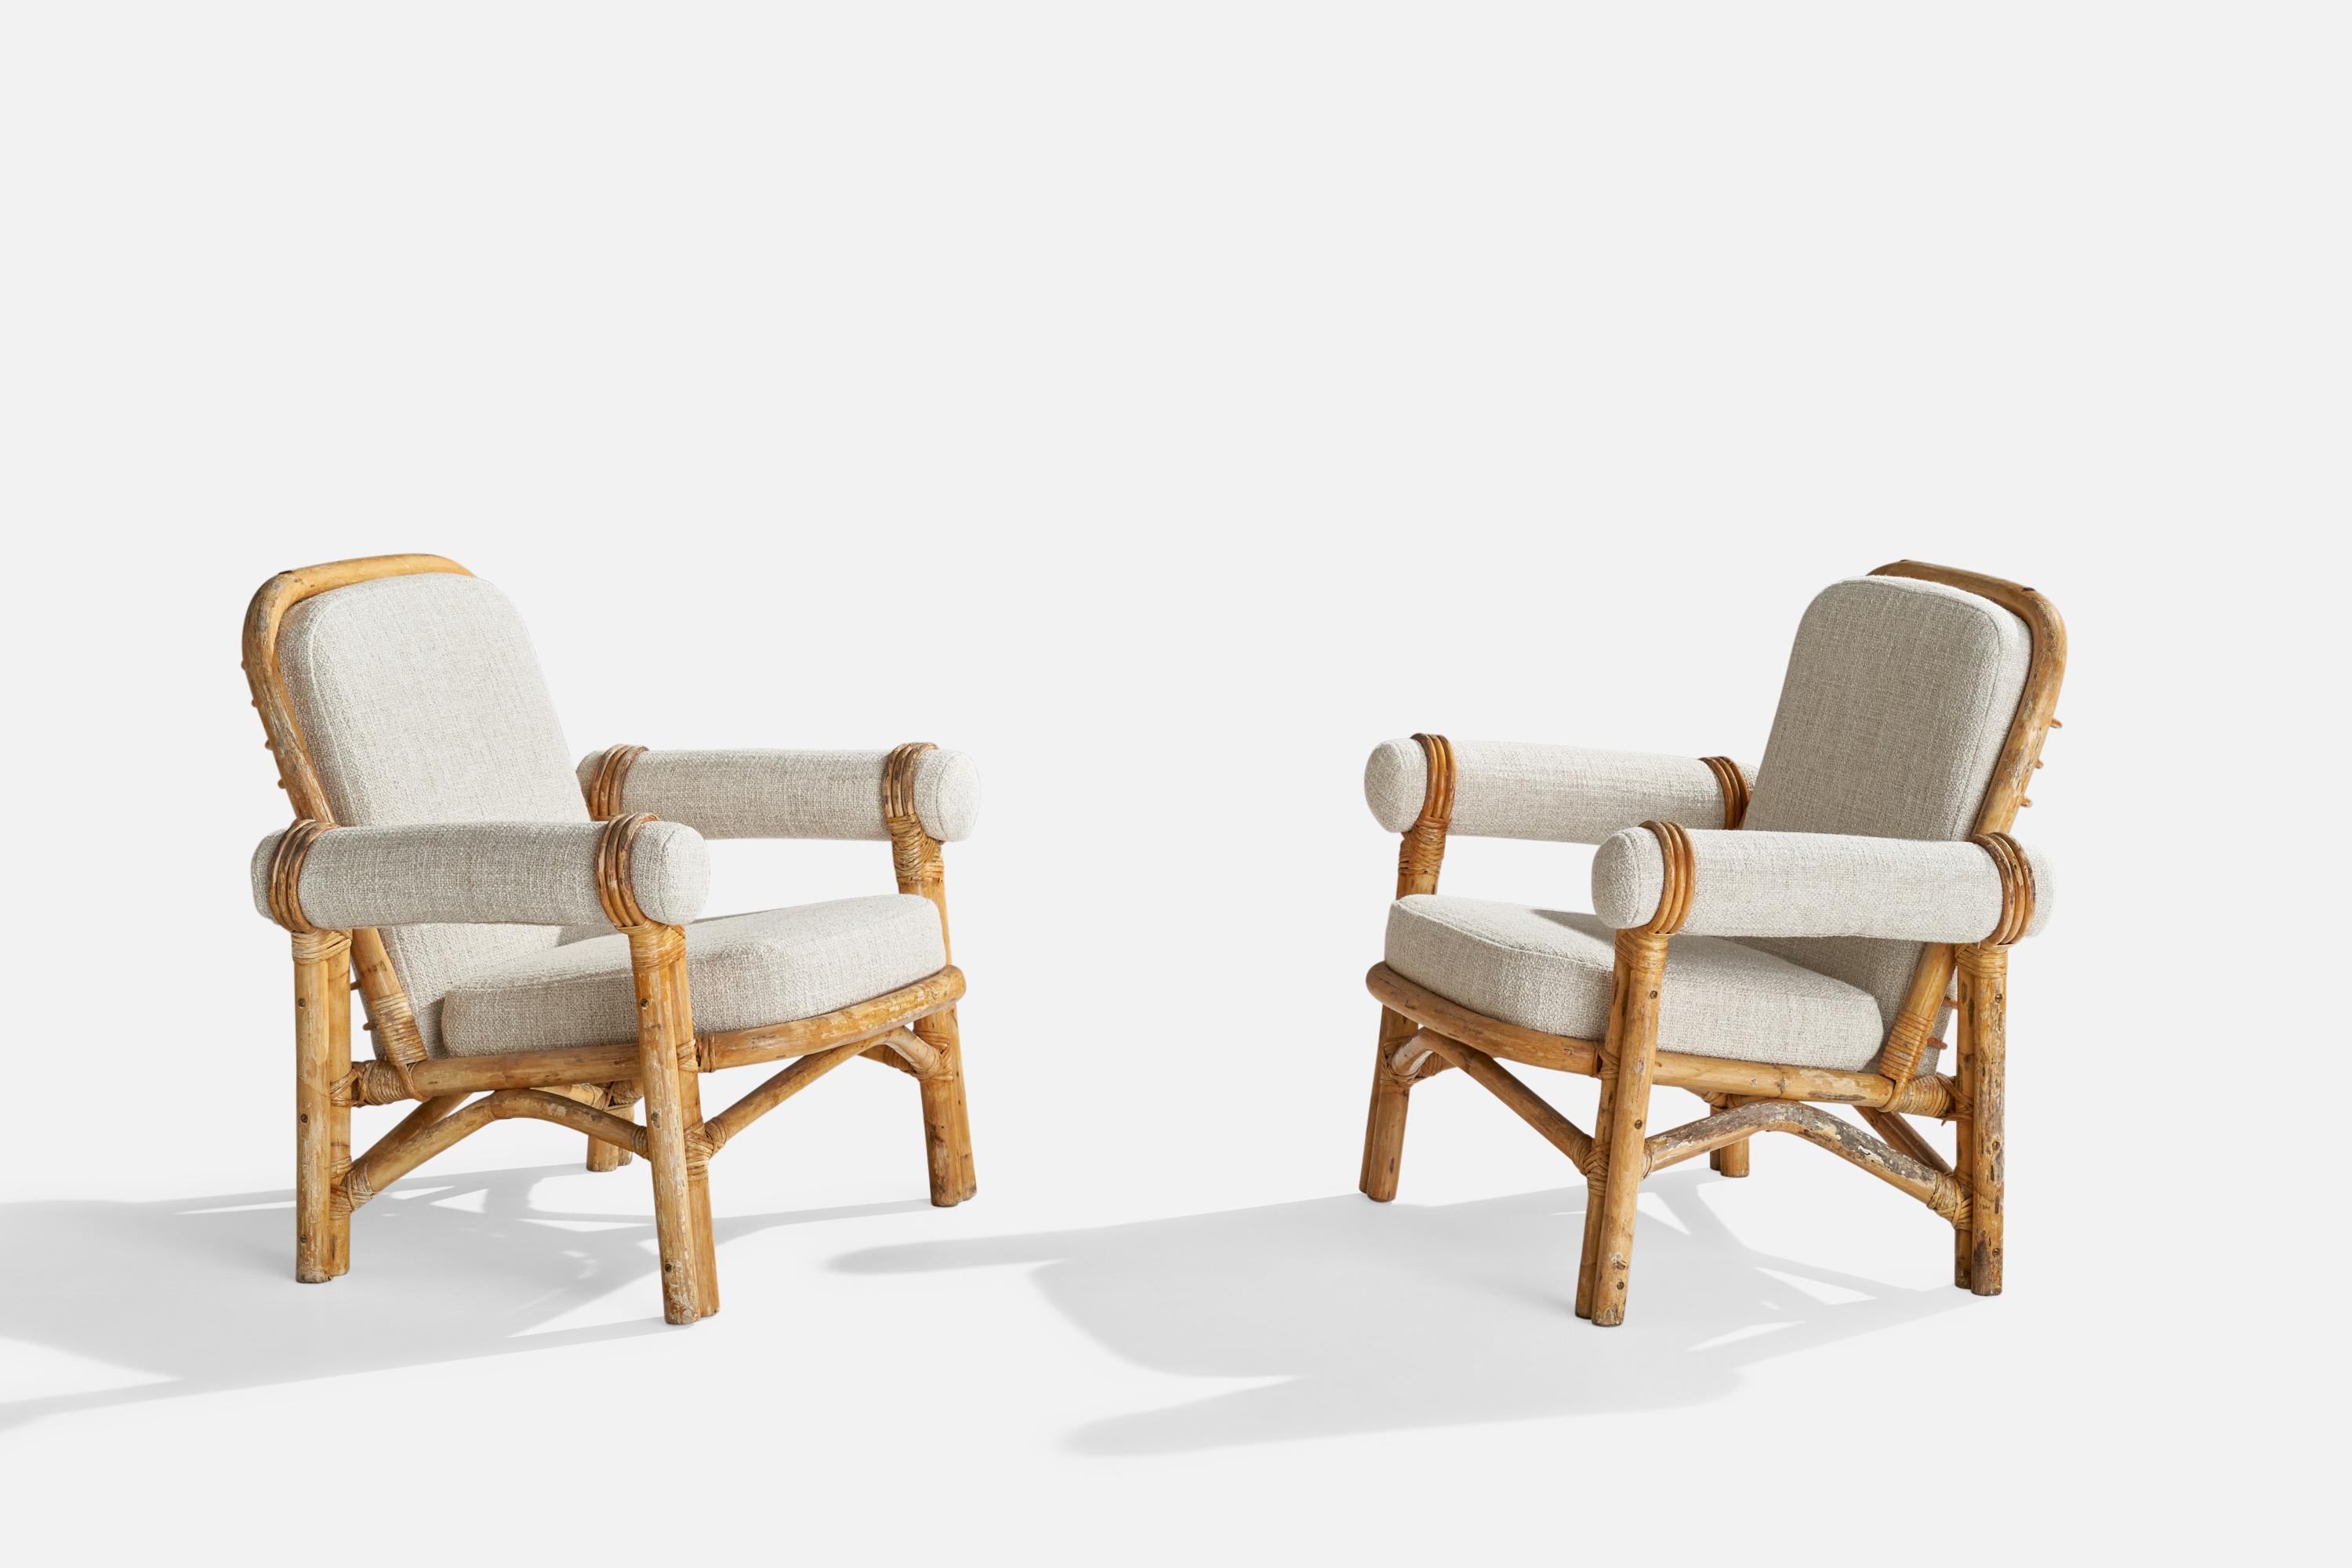 Ein Paar geformte Loungesessel aus Bambus, Rattan und cremefarbenem Stoff, vermutlich in Schweden entworfen und hergestellt, 1950er Jahre.

Sitzhöhe: 16.75